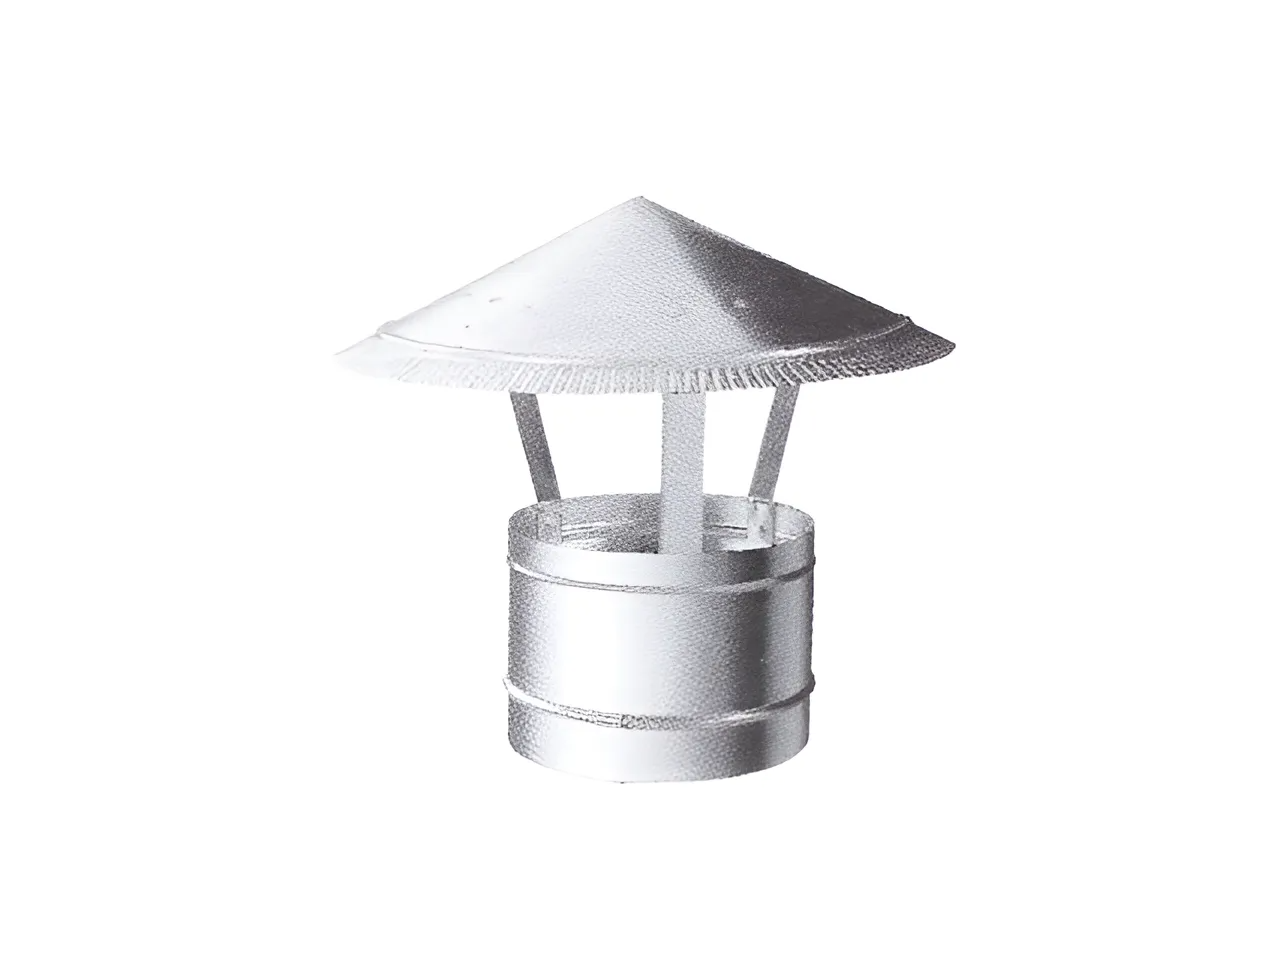 Зонтик крышный ВИЗИОНЕР D 120 мм оцинкованная сталь 99-005-120 антирринум абрикосовый зонтик